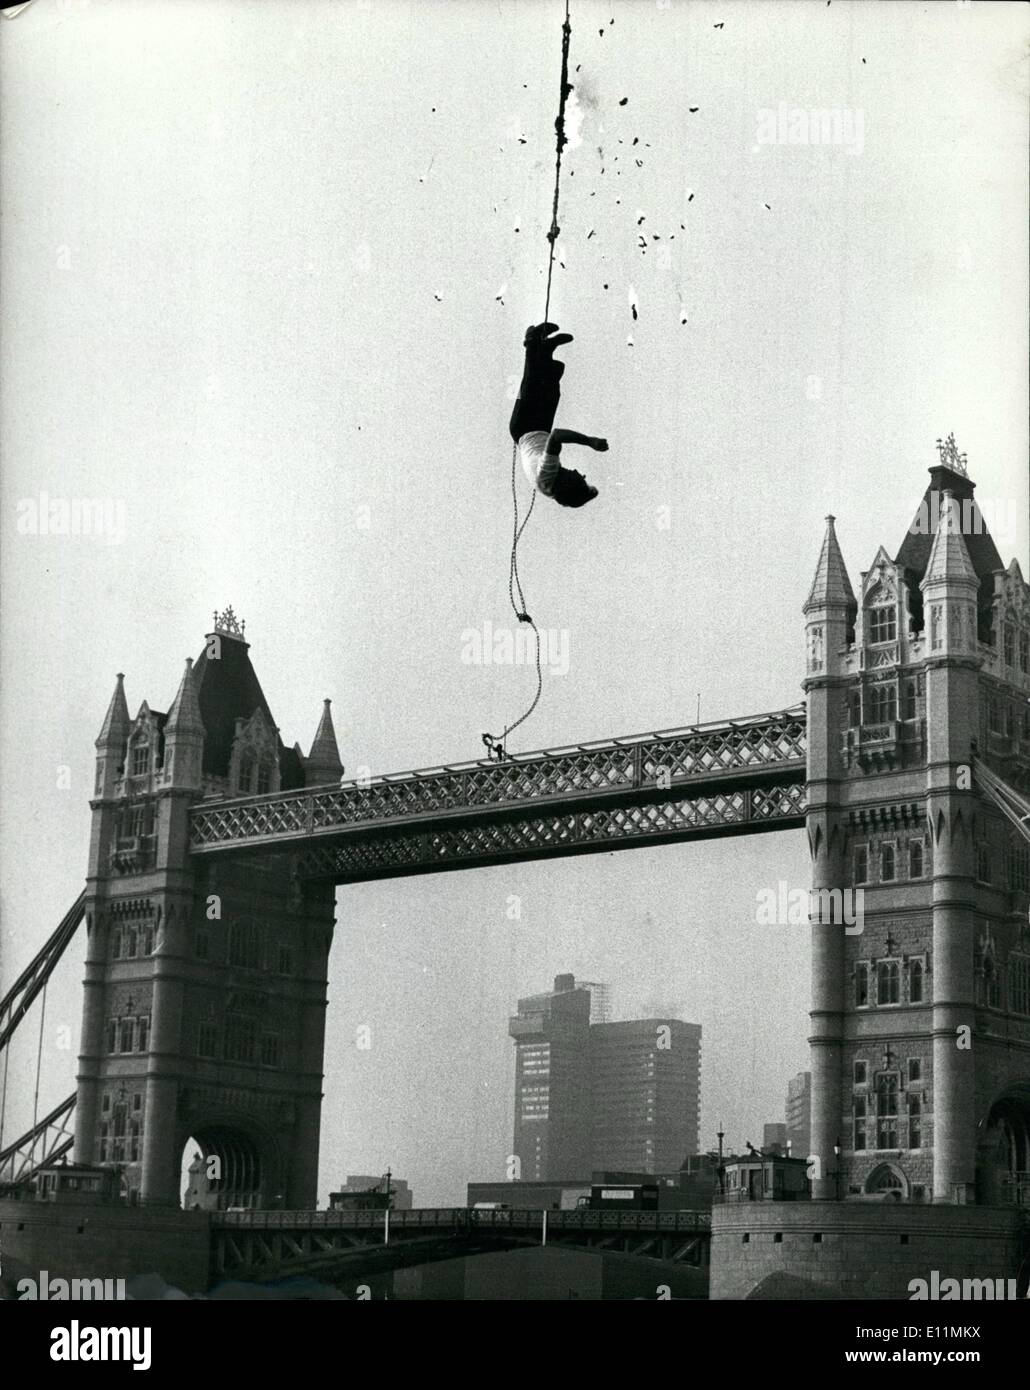 11. November 1978 - Hanging Fire Entfesselungskünstler Alan Alan entflogen Ketten 100 ft über der Themse an der Tower Bridge gestern als das Seil, an dem er hing, weggebrannt. Der 52-jährige durchgeführt den Stunt, unterbrochen von einem Kran, der dritte Circus World Championships starten, die in London am kommenden Montag Dezember 11. eröffnen. Foto zeigt: Bits des brennenden Seil fallen rund um Alan Alan, wie er kämpft, um sich bei seinem Stunt über der Themse an der Tower Bridge gestern zu befreien. Stockfoto